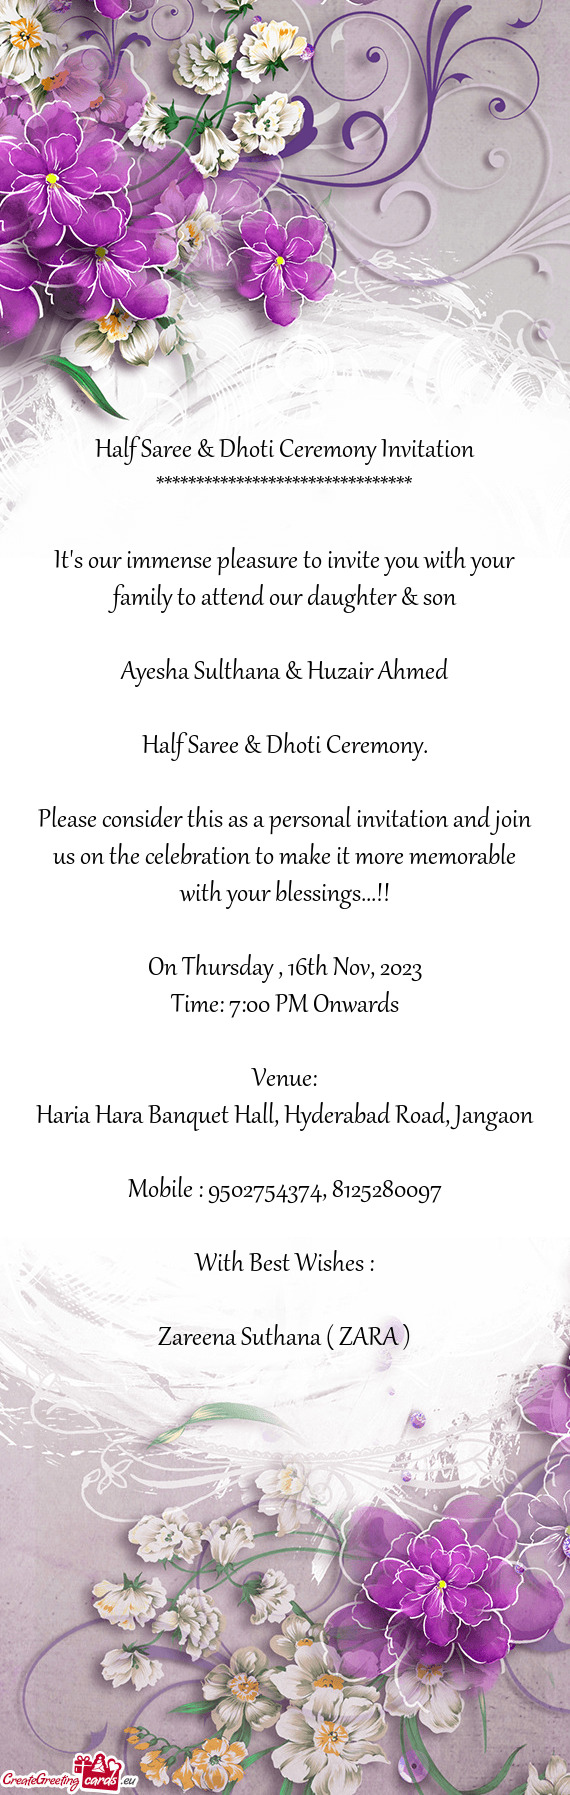 Haria Hara Banquet Hall, Hyderabad Road, Jangaon